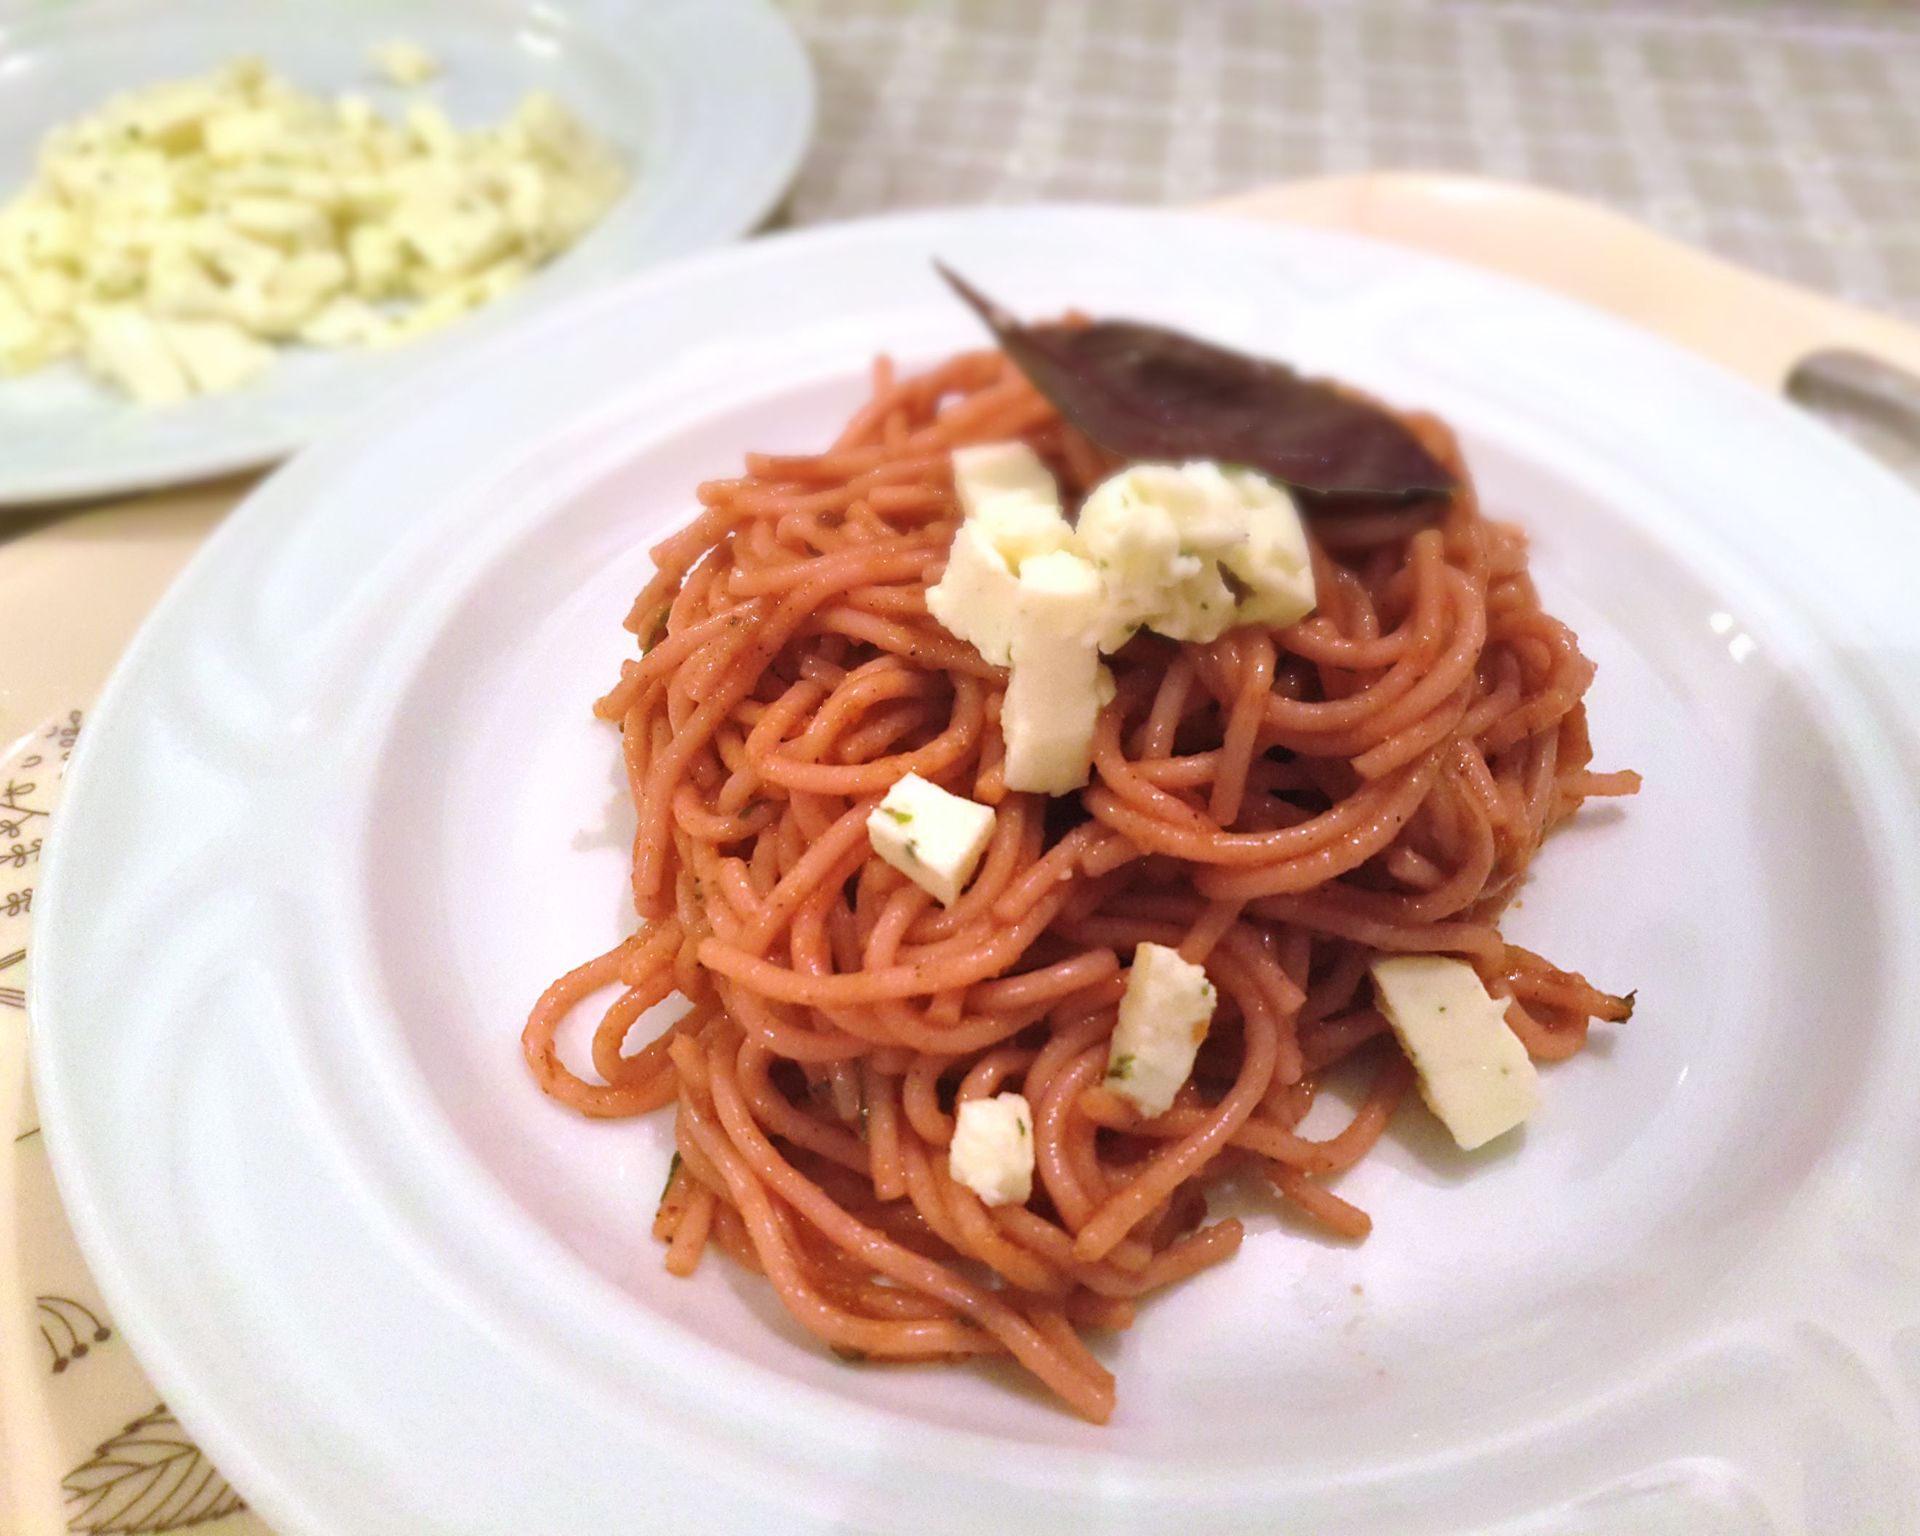 Krásne naservírované zakrútené paradajkové špagety so syrom na kocky ozdobené listom bazalky